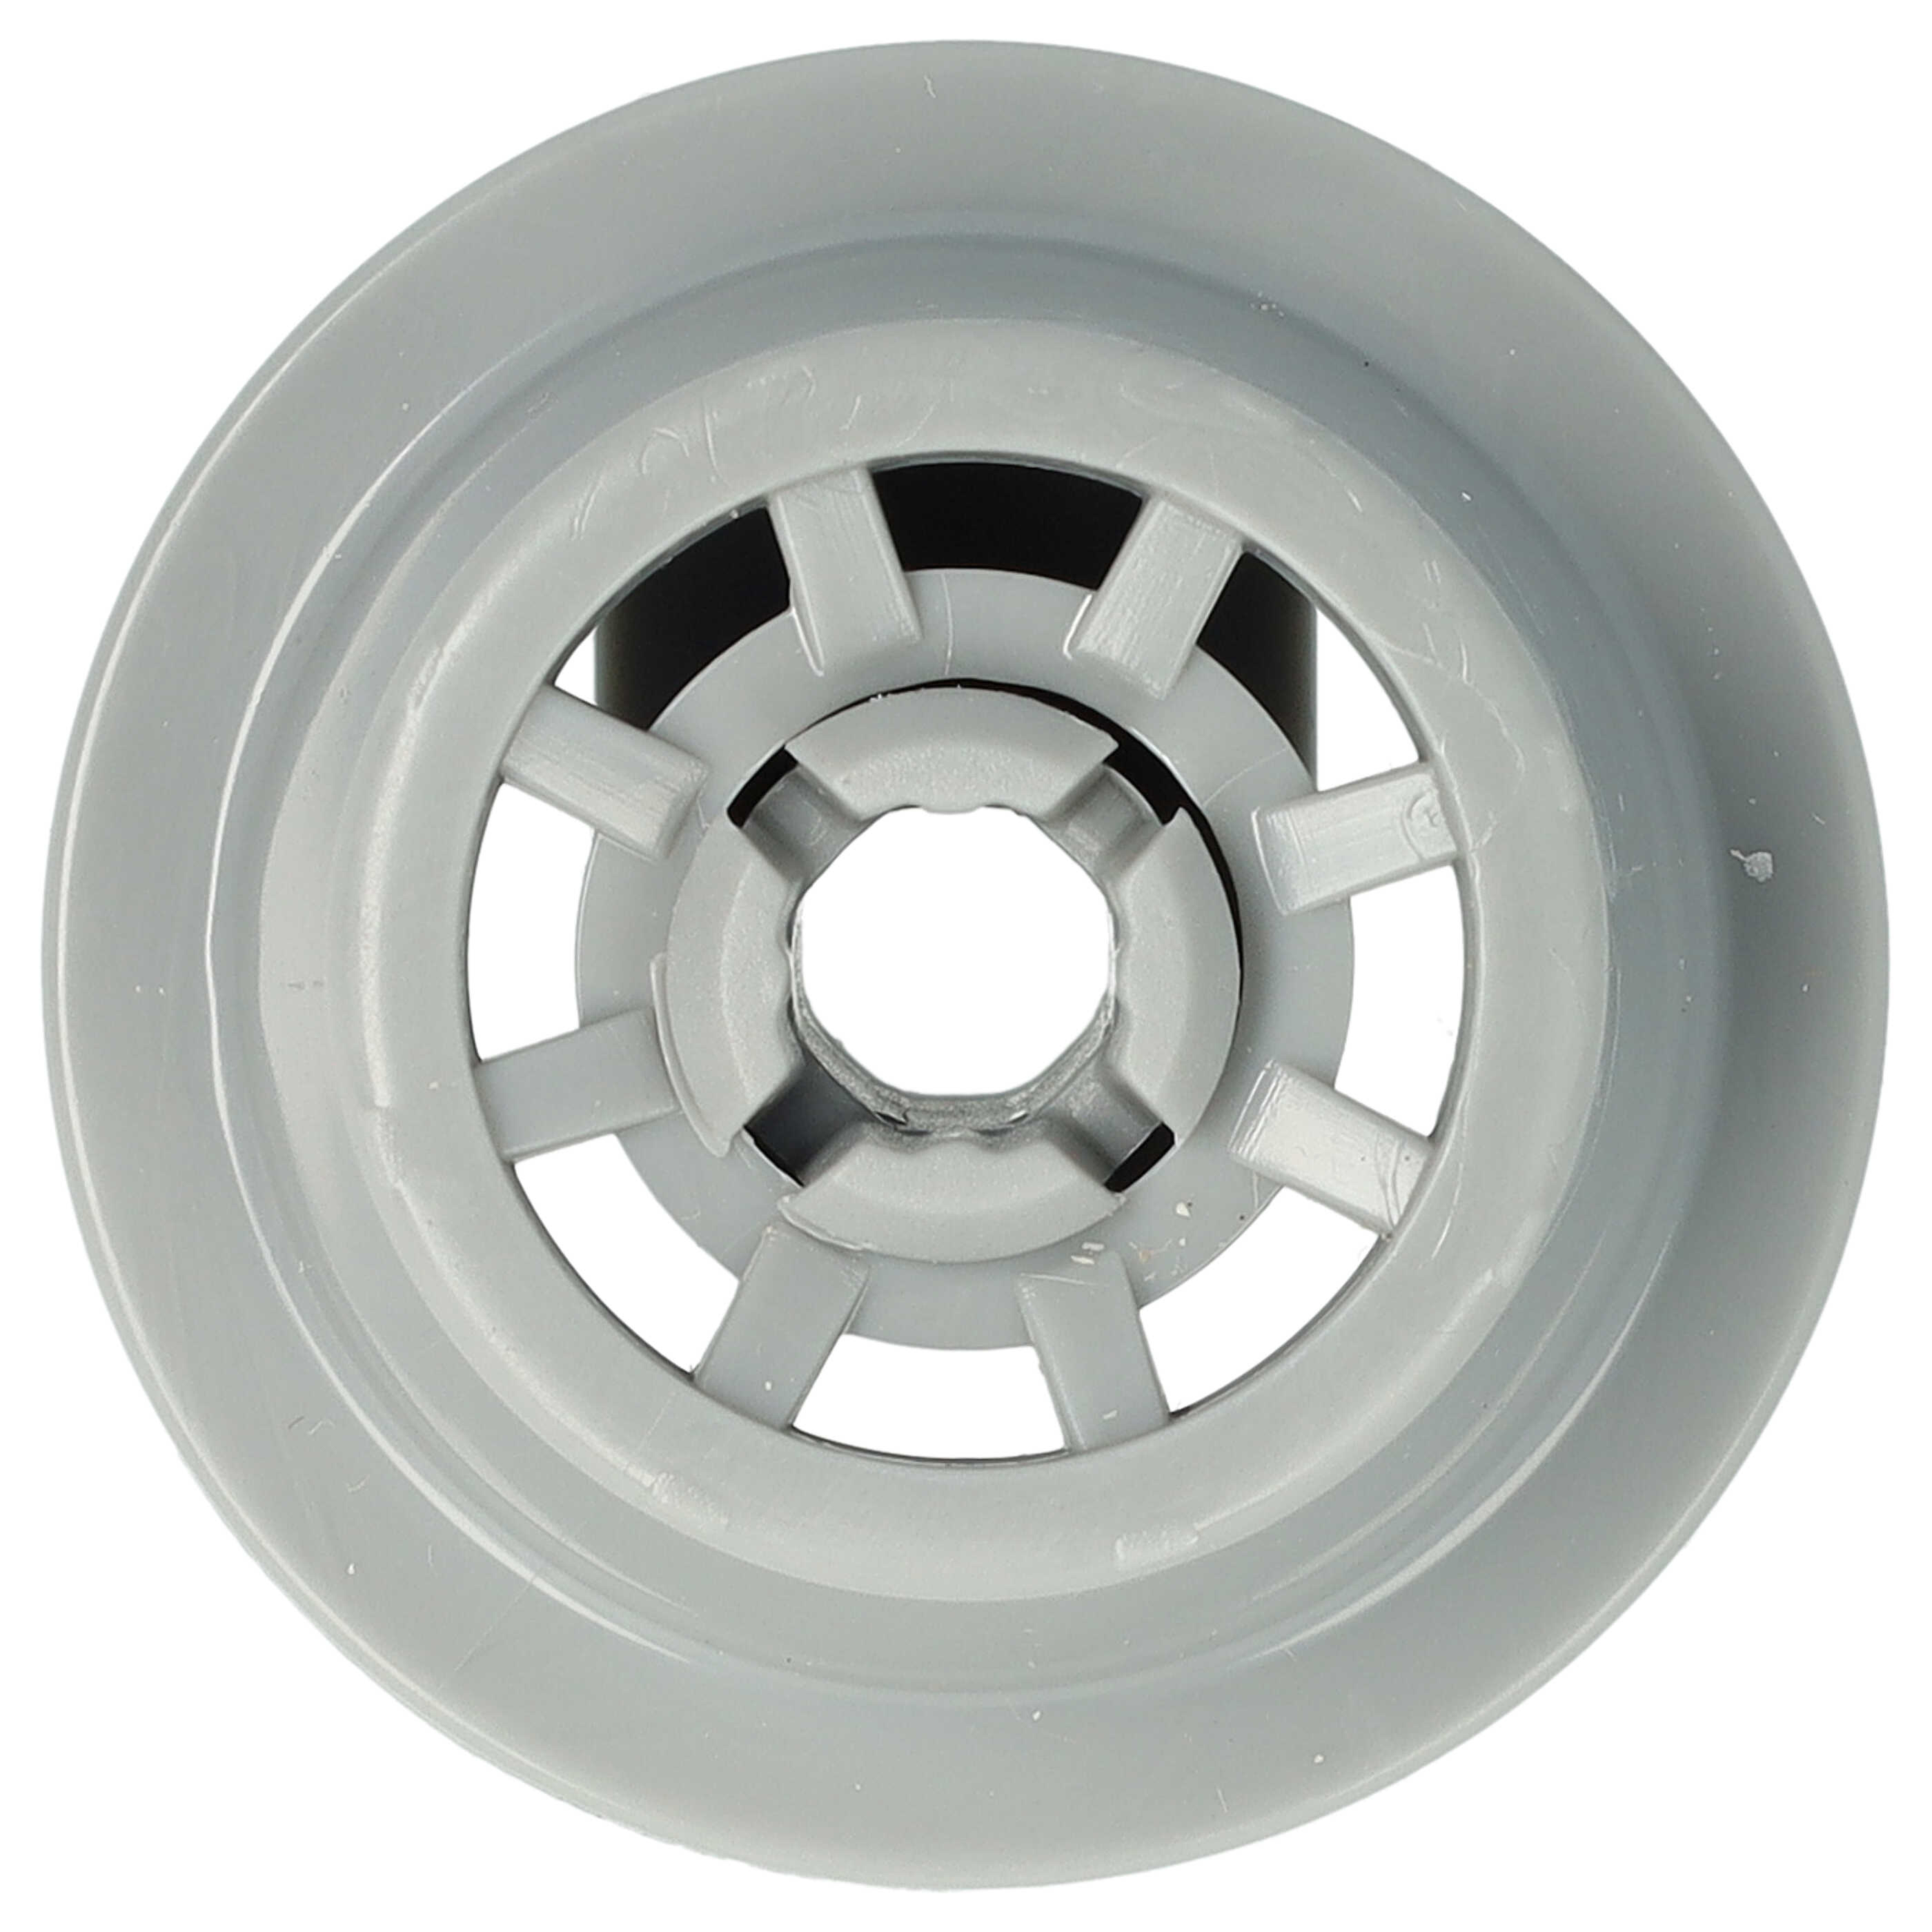 vhbw Roulette pour panier inférieur de lave-vaisselle diamètre 35 mm remplace